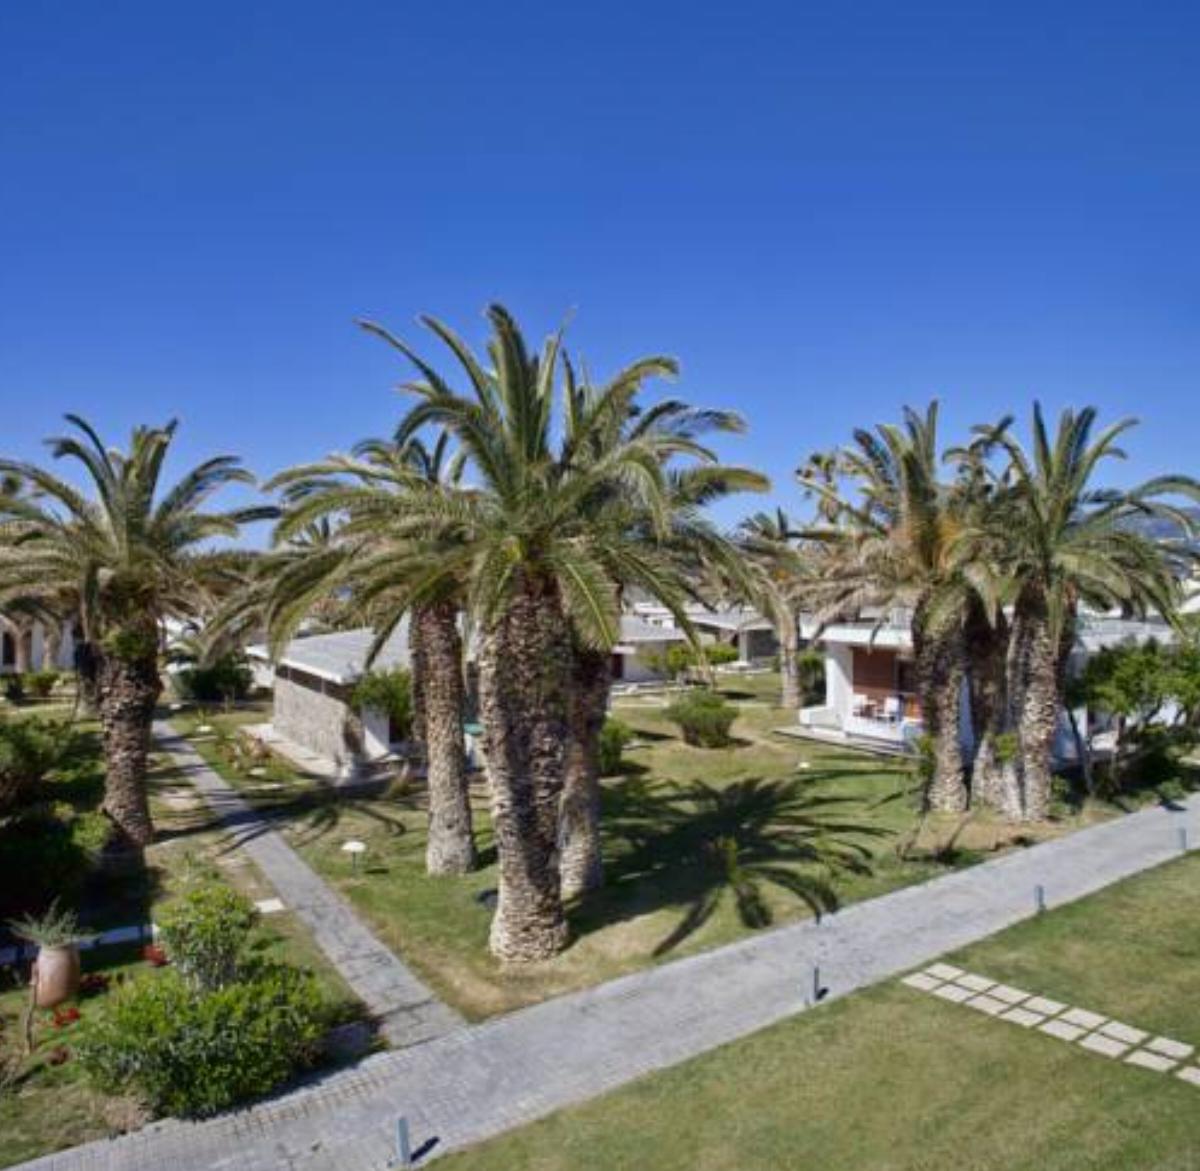 Civitel Creta Beach Hotel Amoudara Herakliou Greece